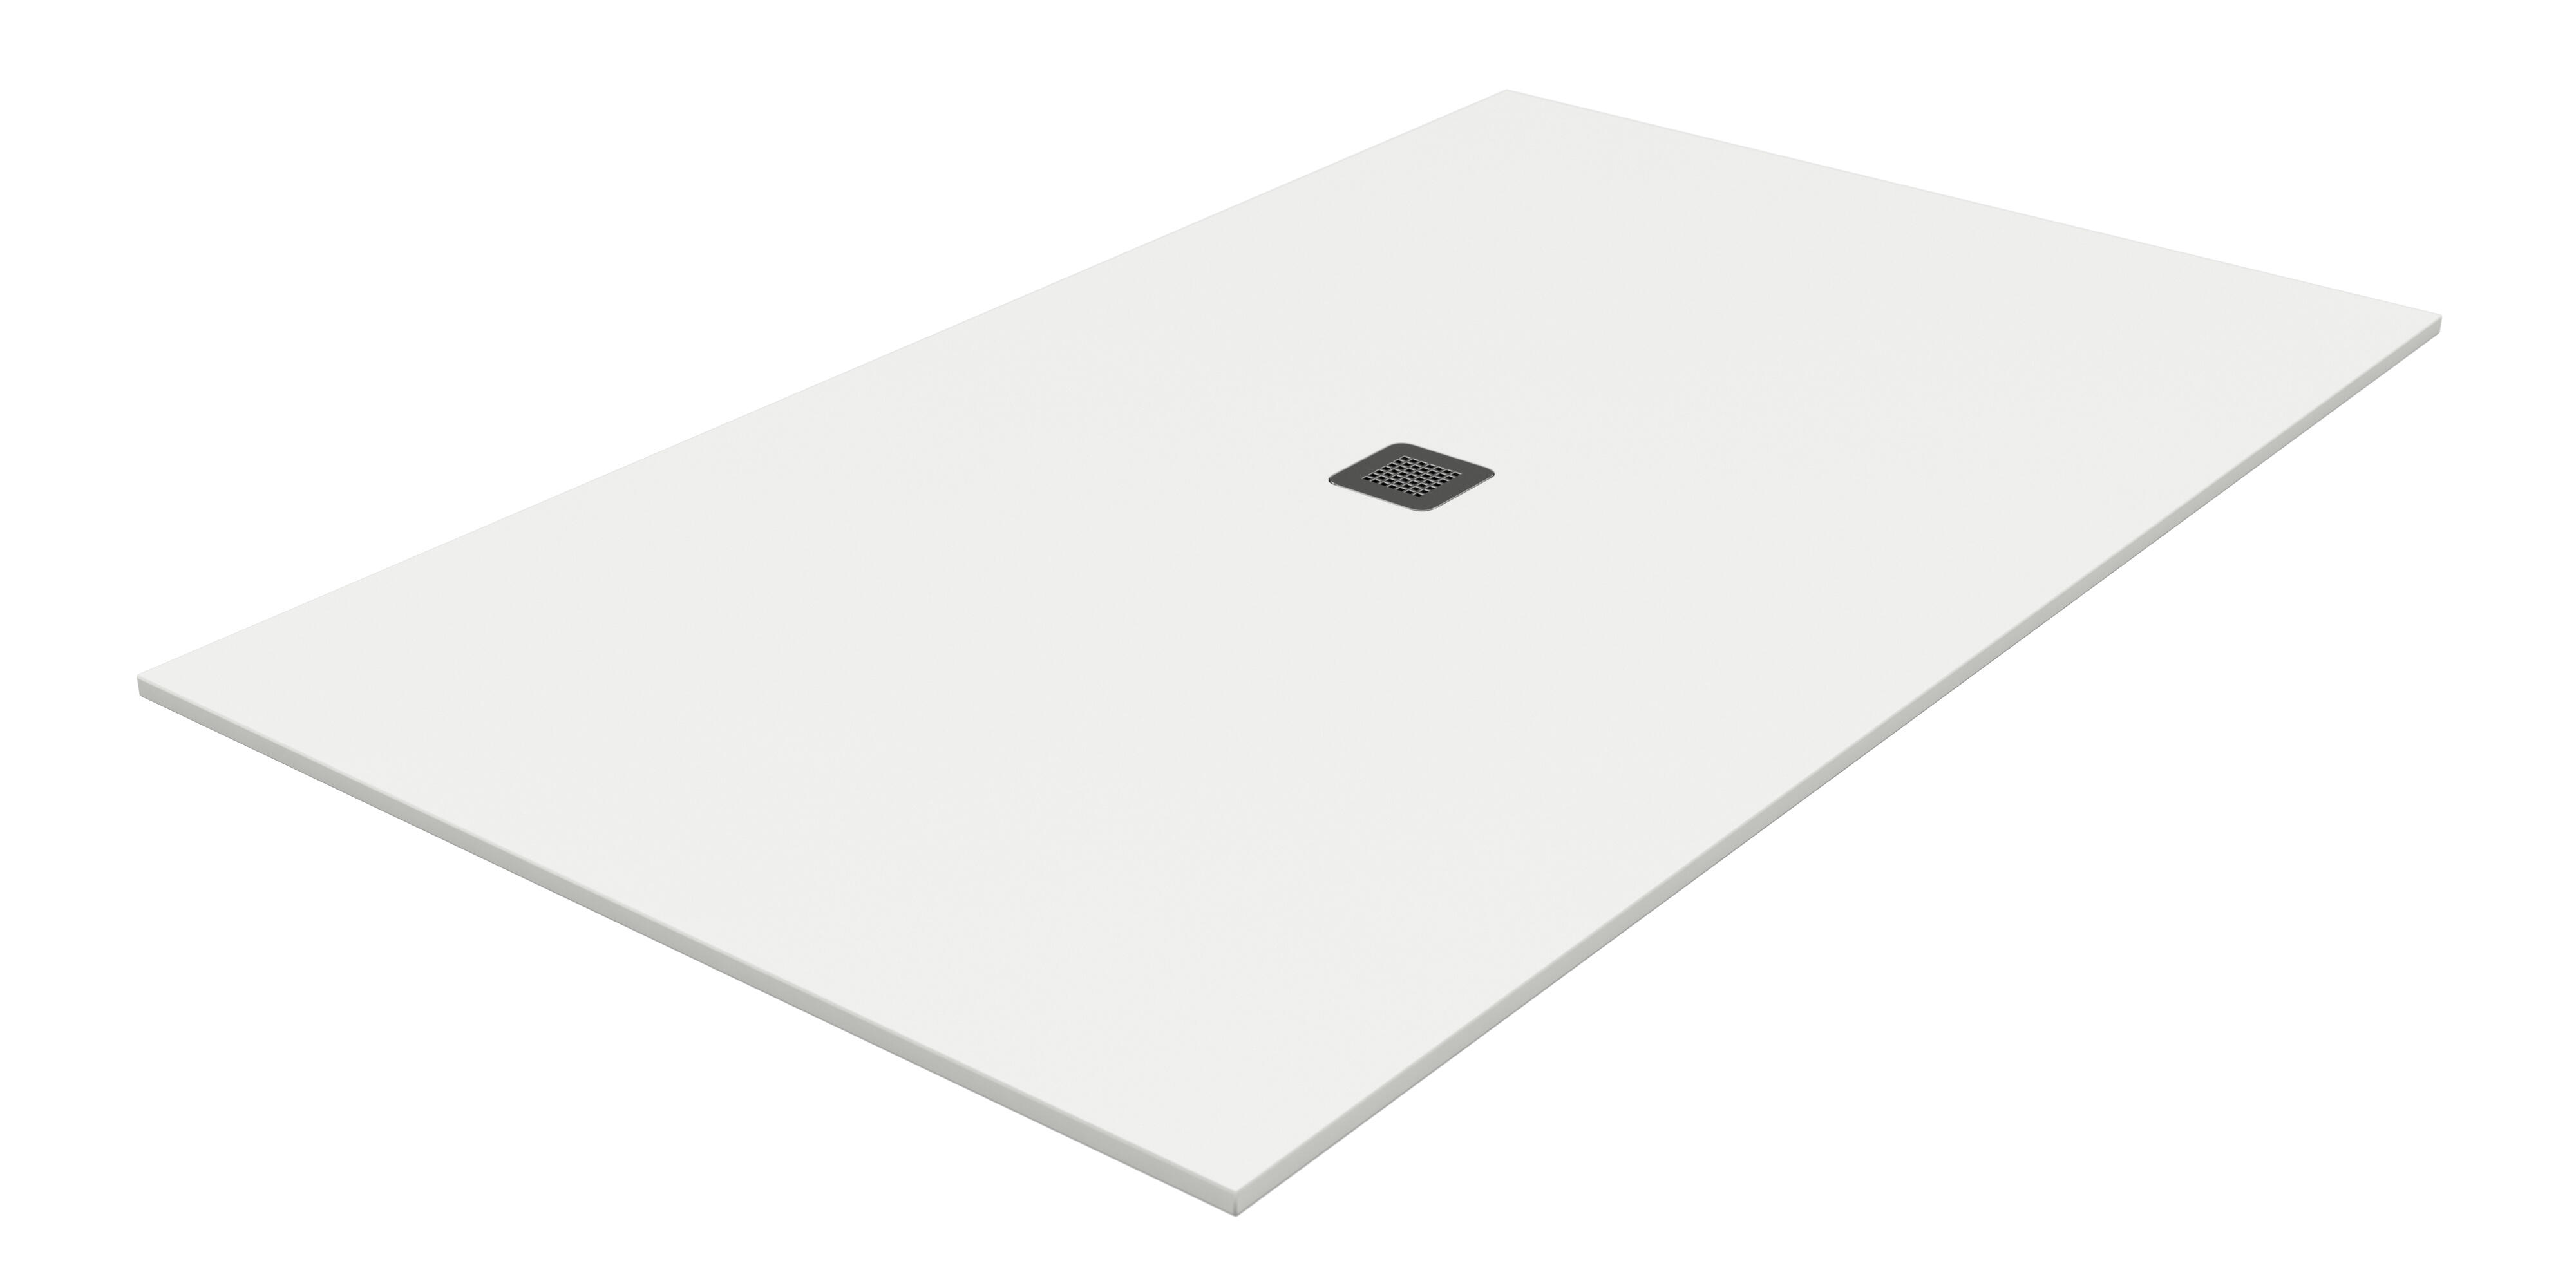 Plato de ducha kioto 160x90 cm blanco